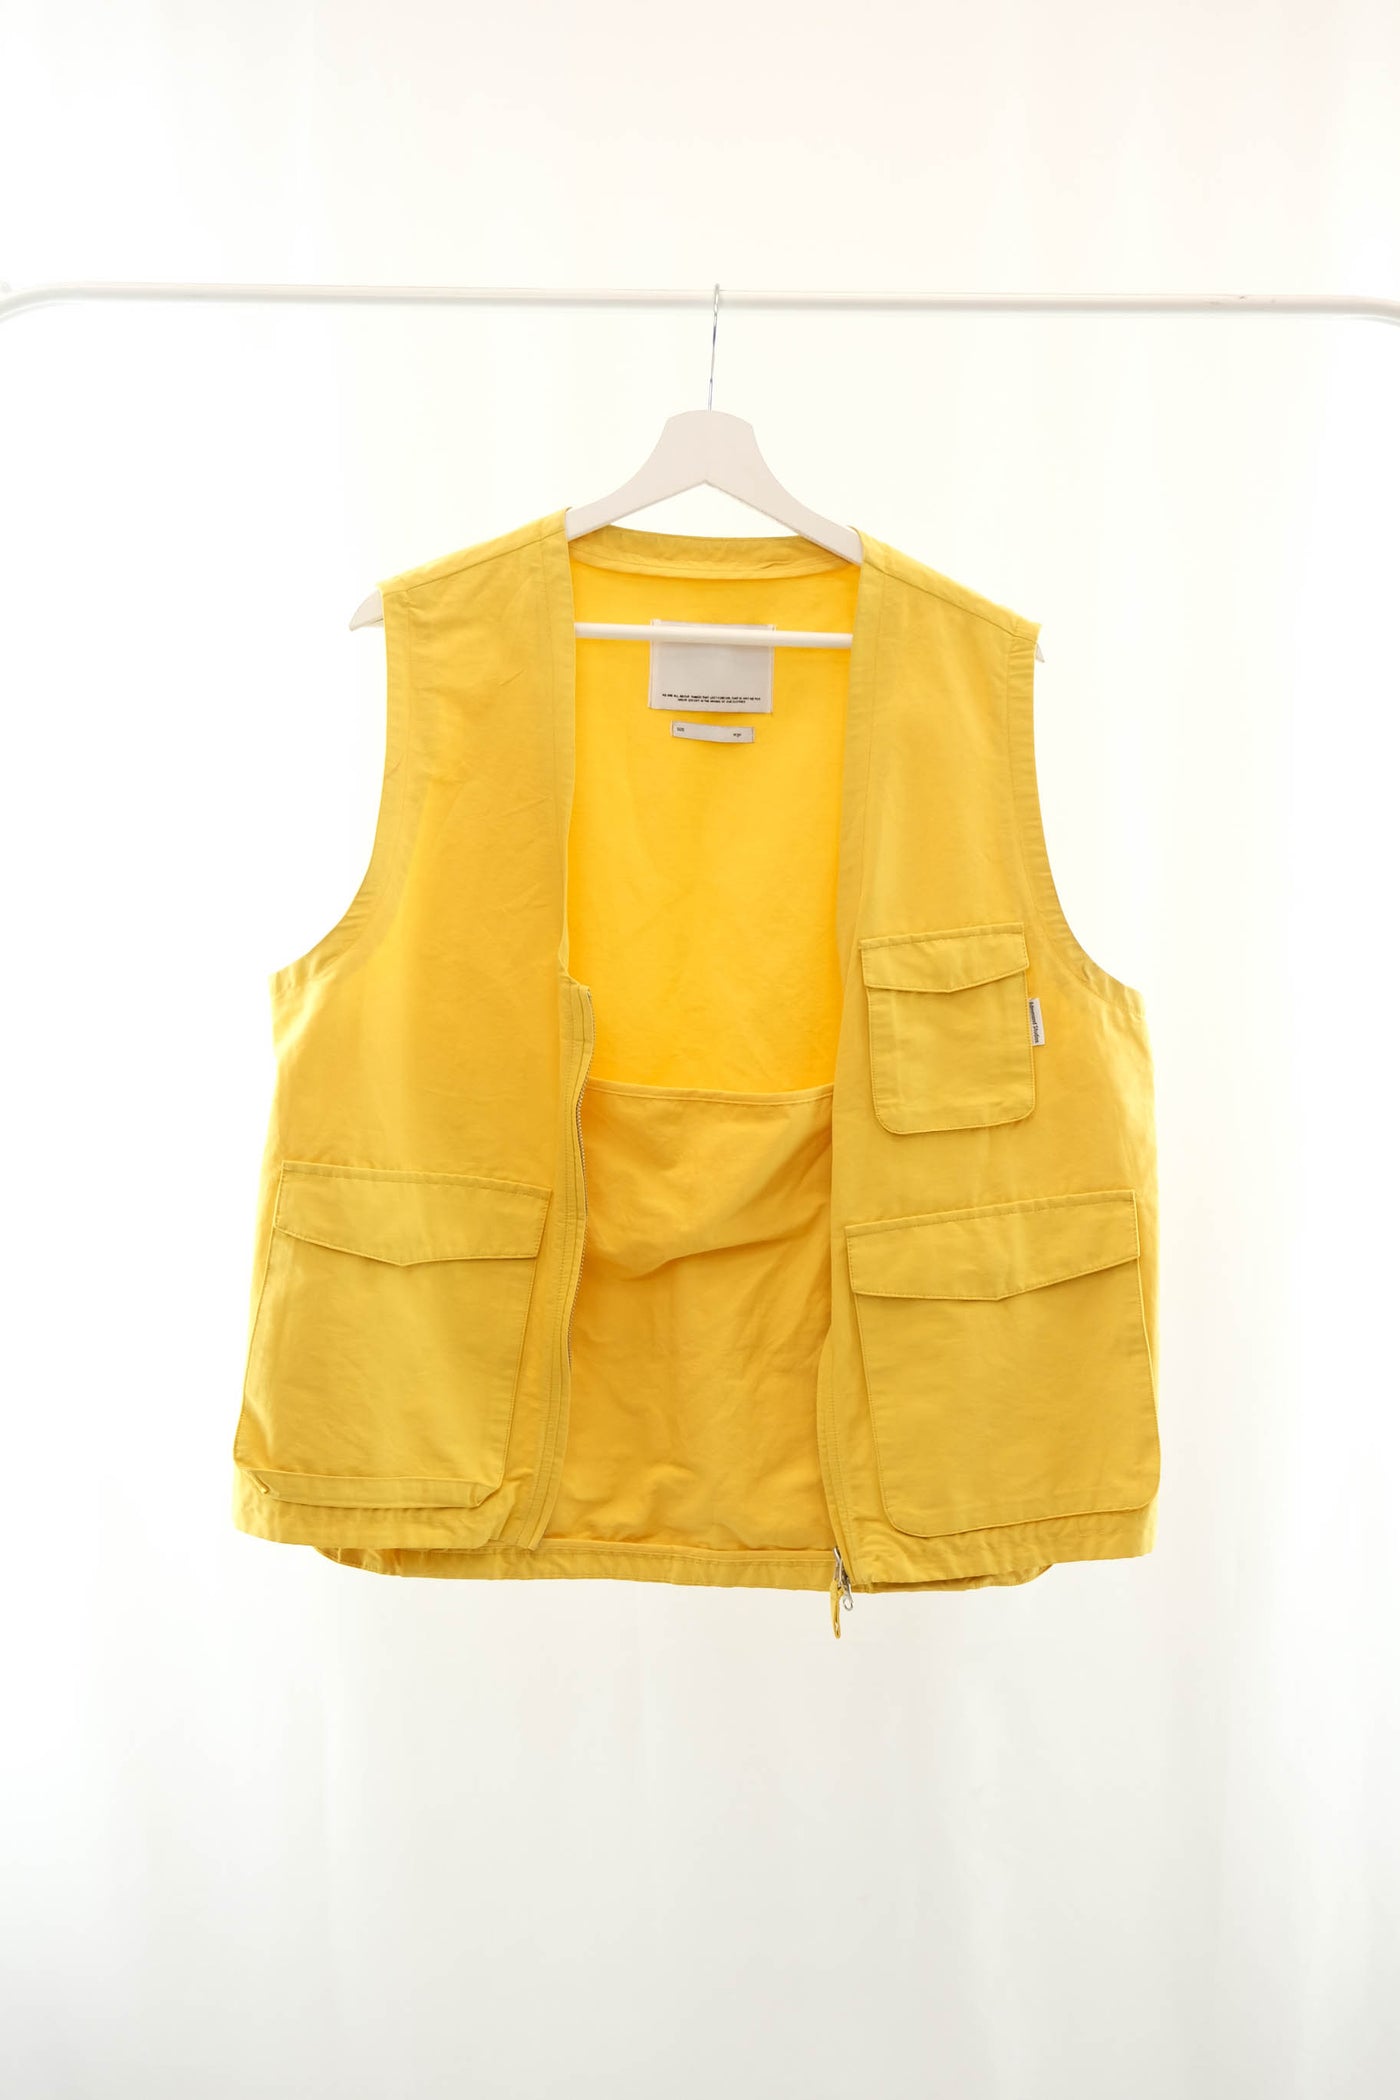 pocket yellow vest